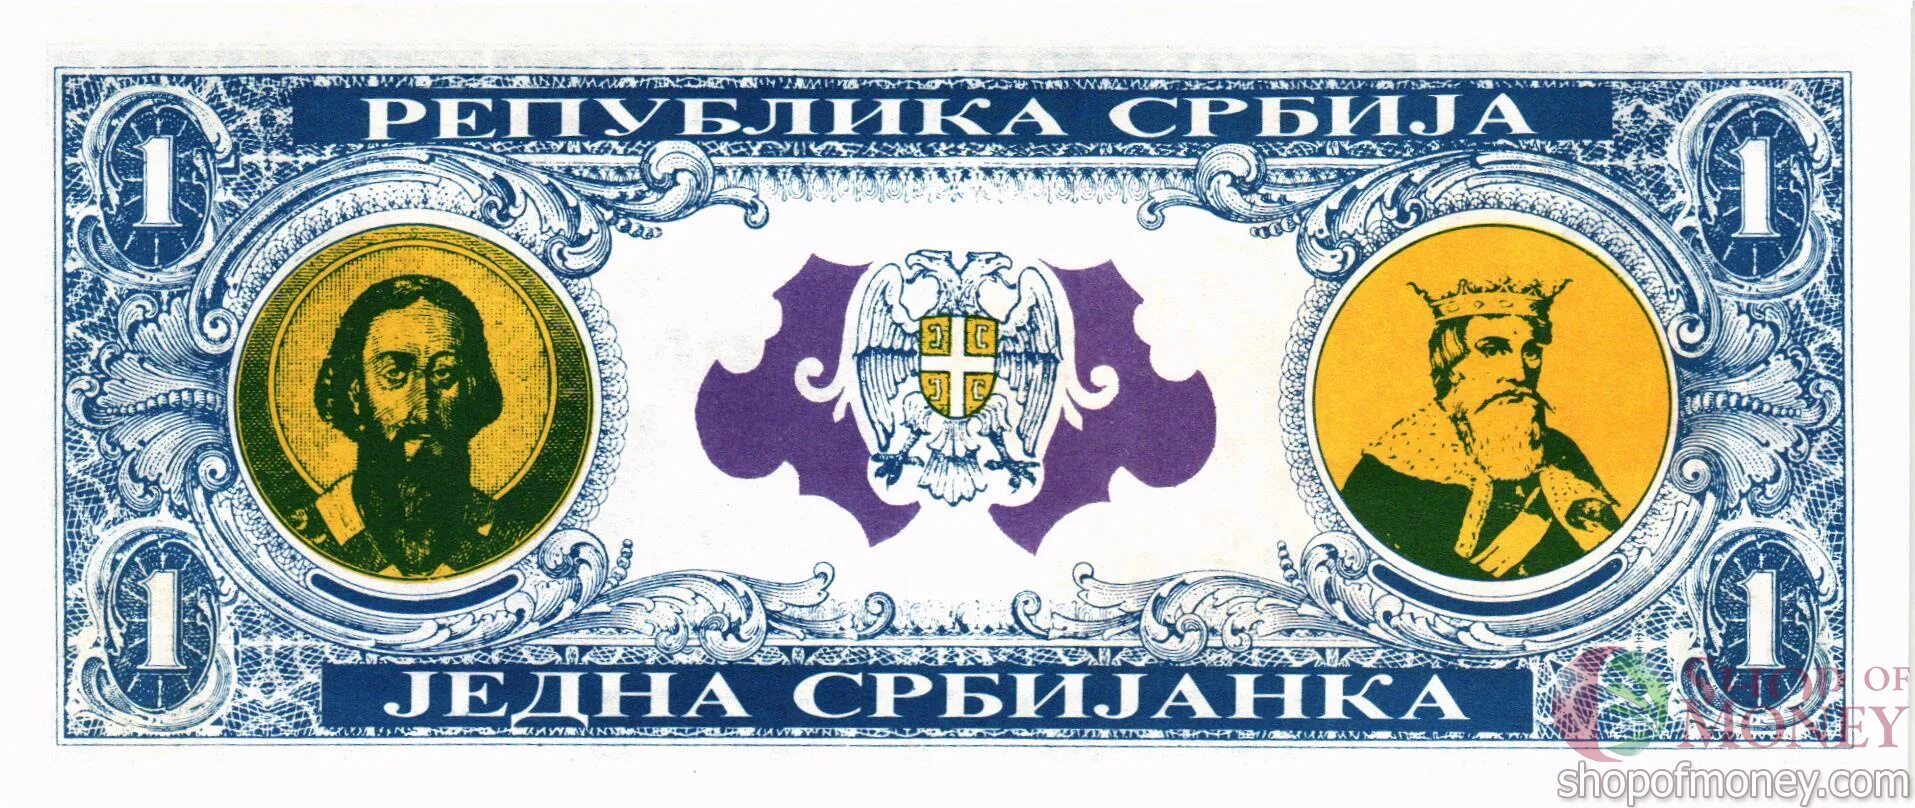 Банкнота Сербии. Сербские деньги банкнота. Банкнота Сербия 2013. Купюры Сербии бумажные.